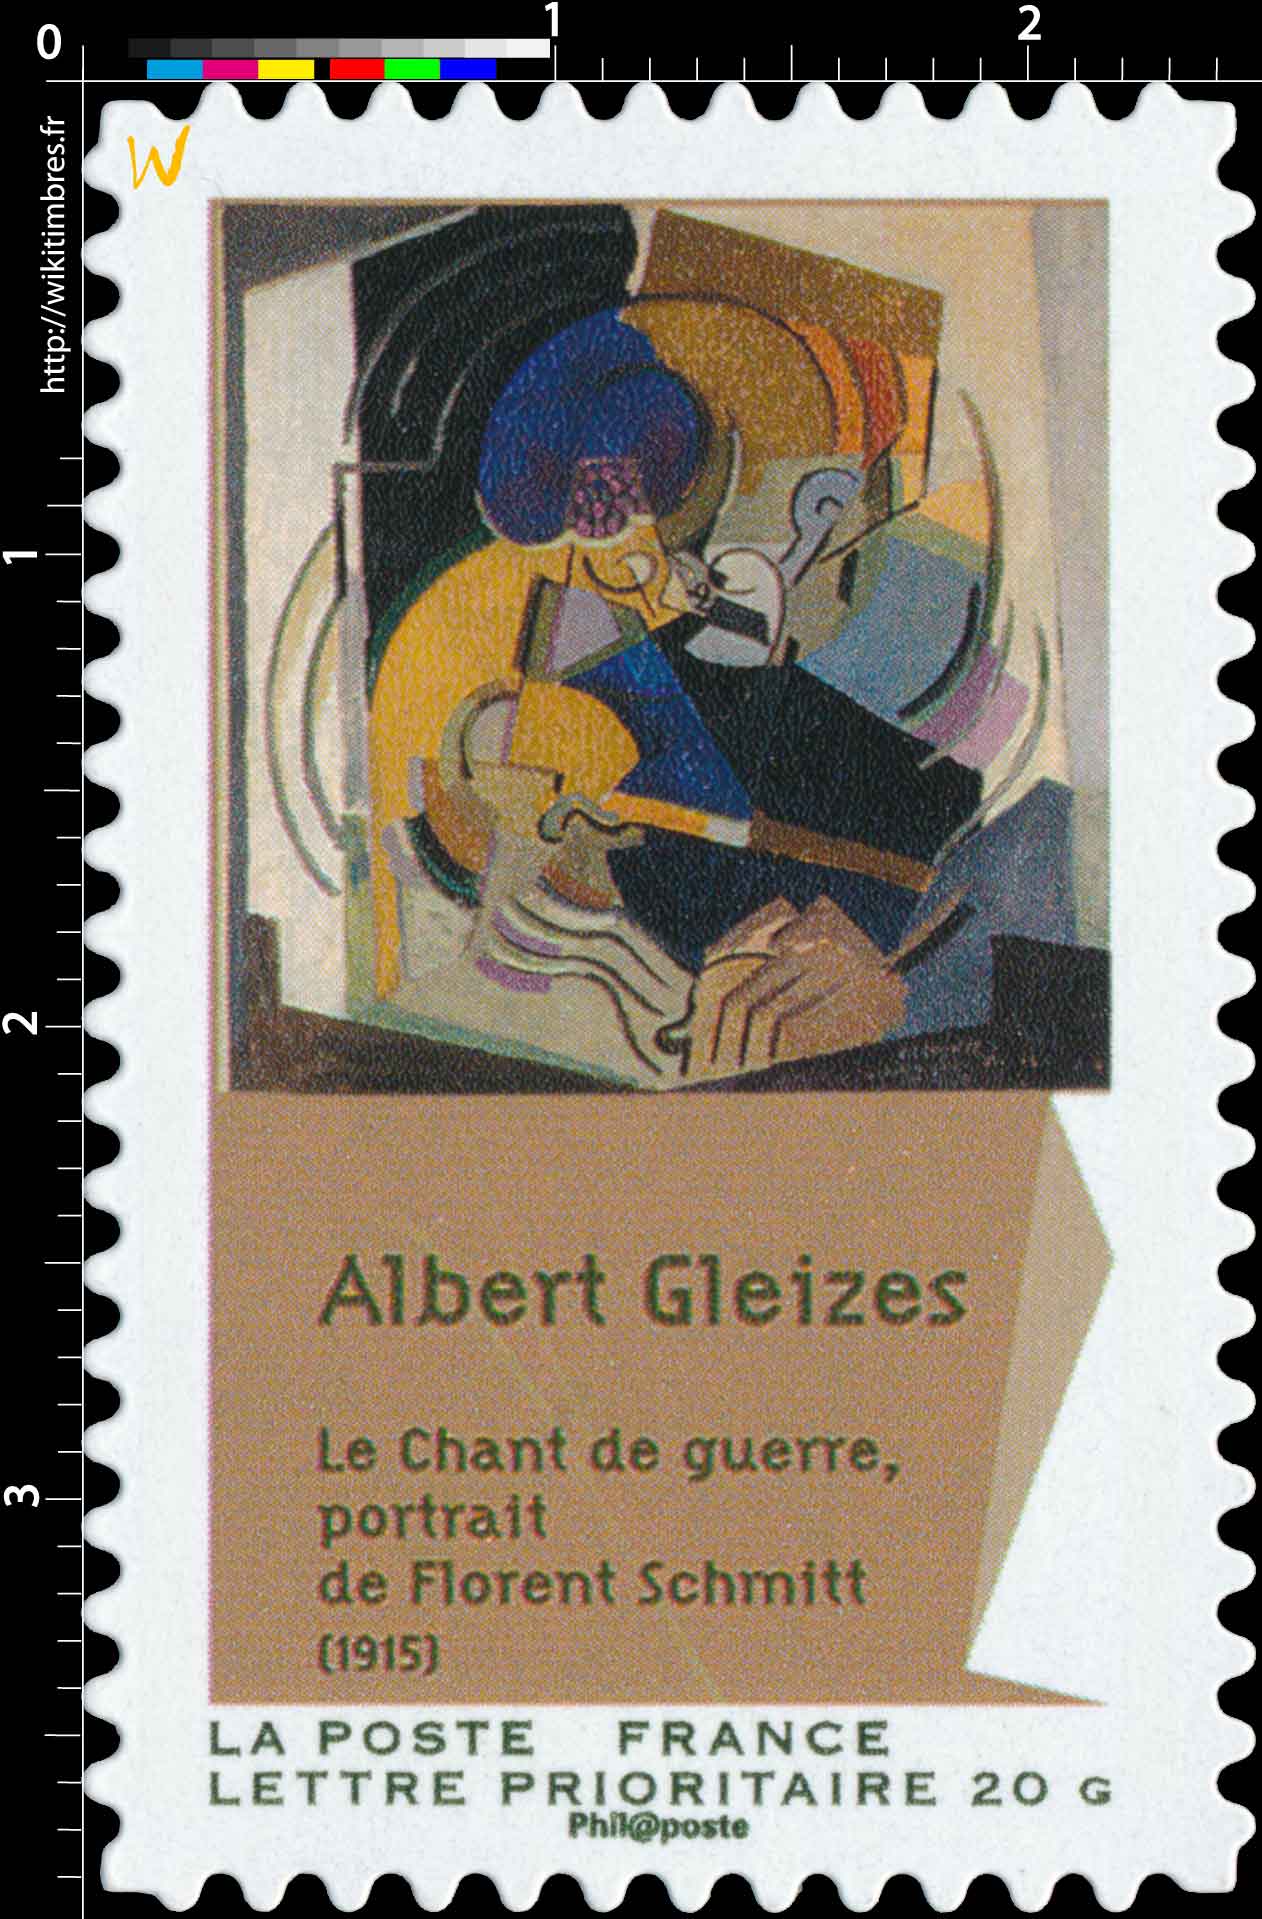 Albert Gleizes Le chant de guerre, portrait de Florent Schmitt (1915)